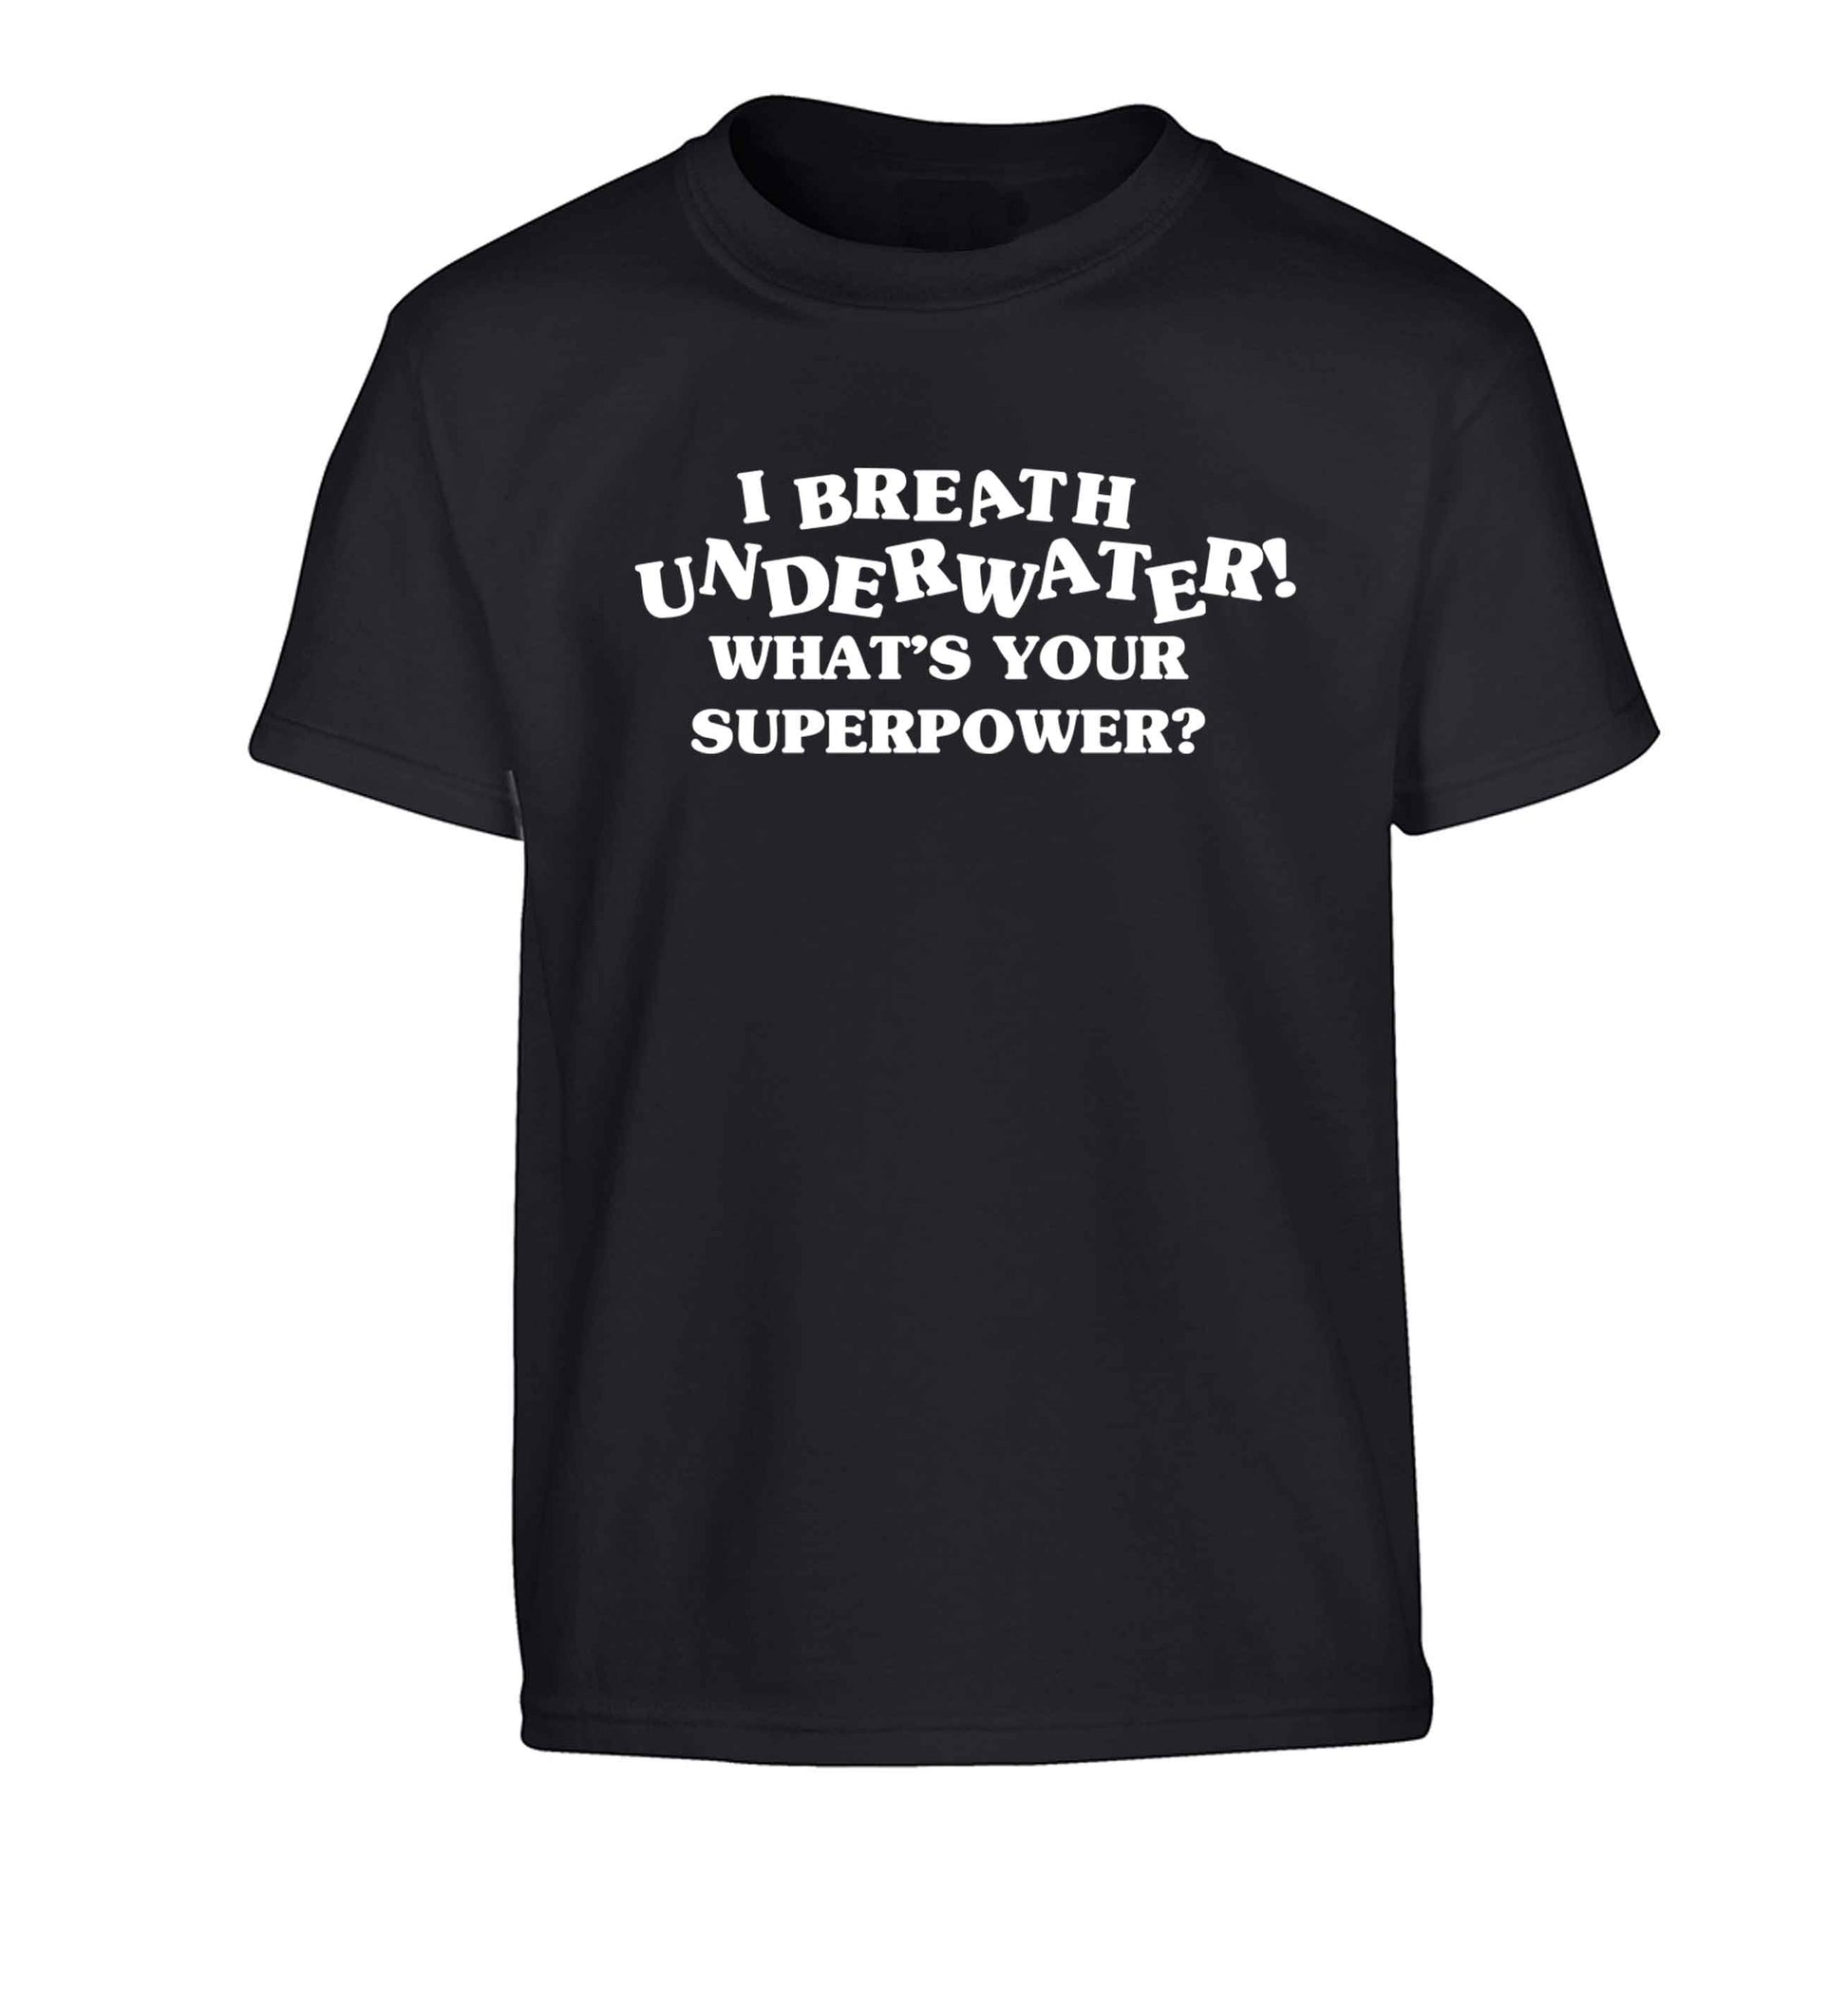 I breath underwater what's your superpower? Children's black Tshirt 12-13 Years